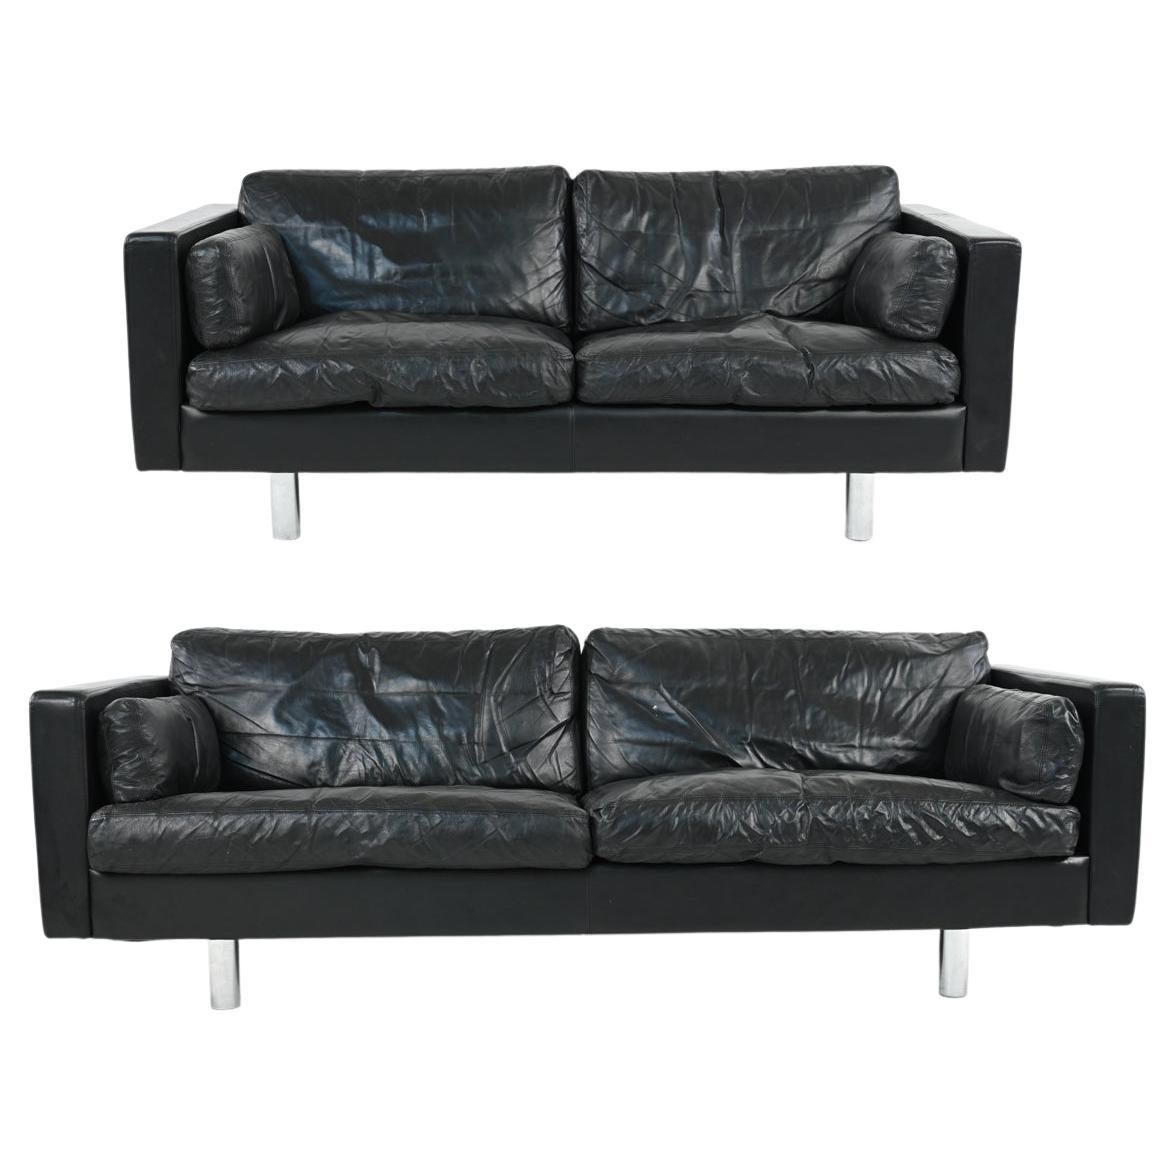 Danish Modern Leather Sofa Suite by Erik Jørgensen for Friis Møbler